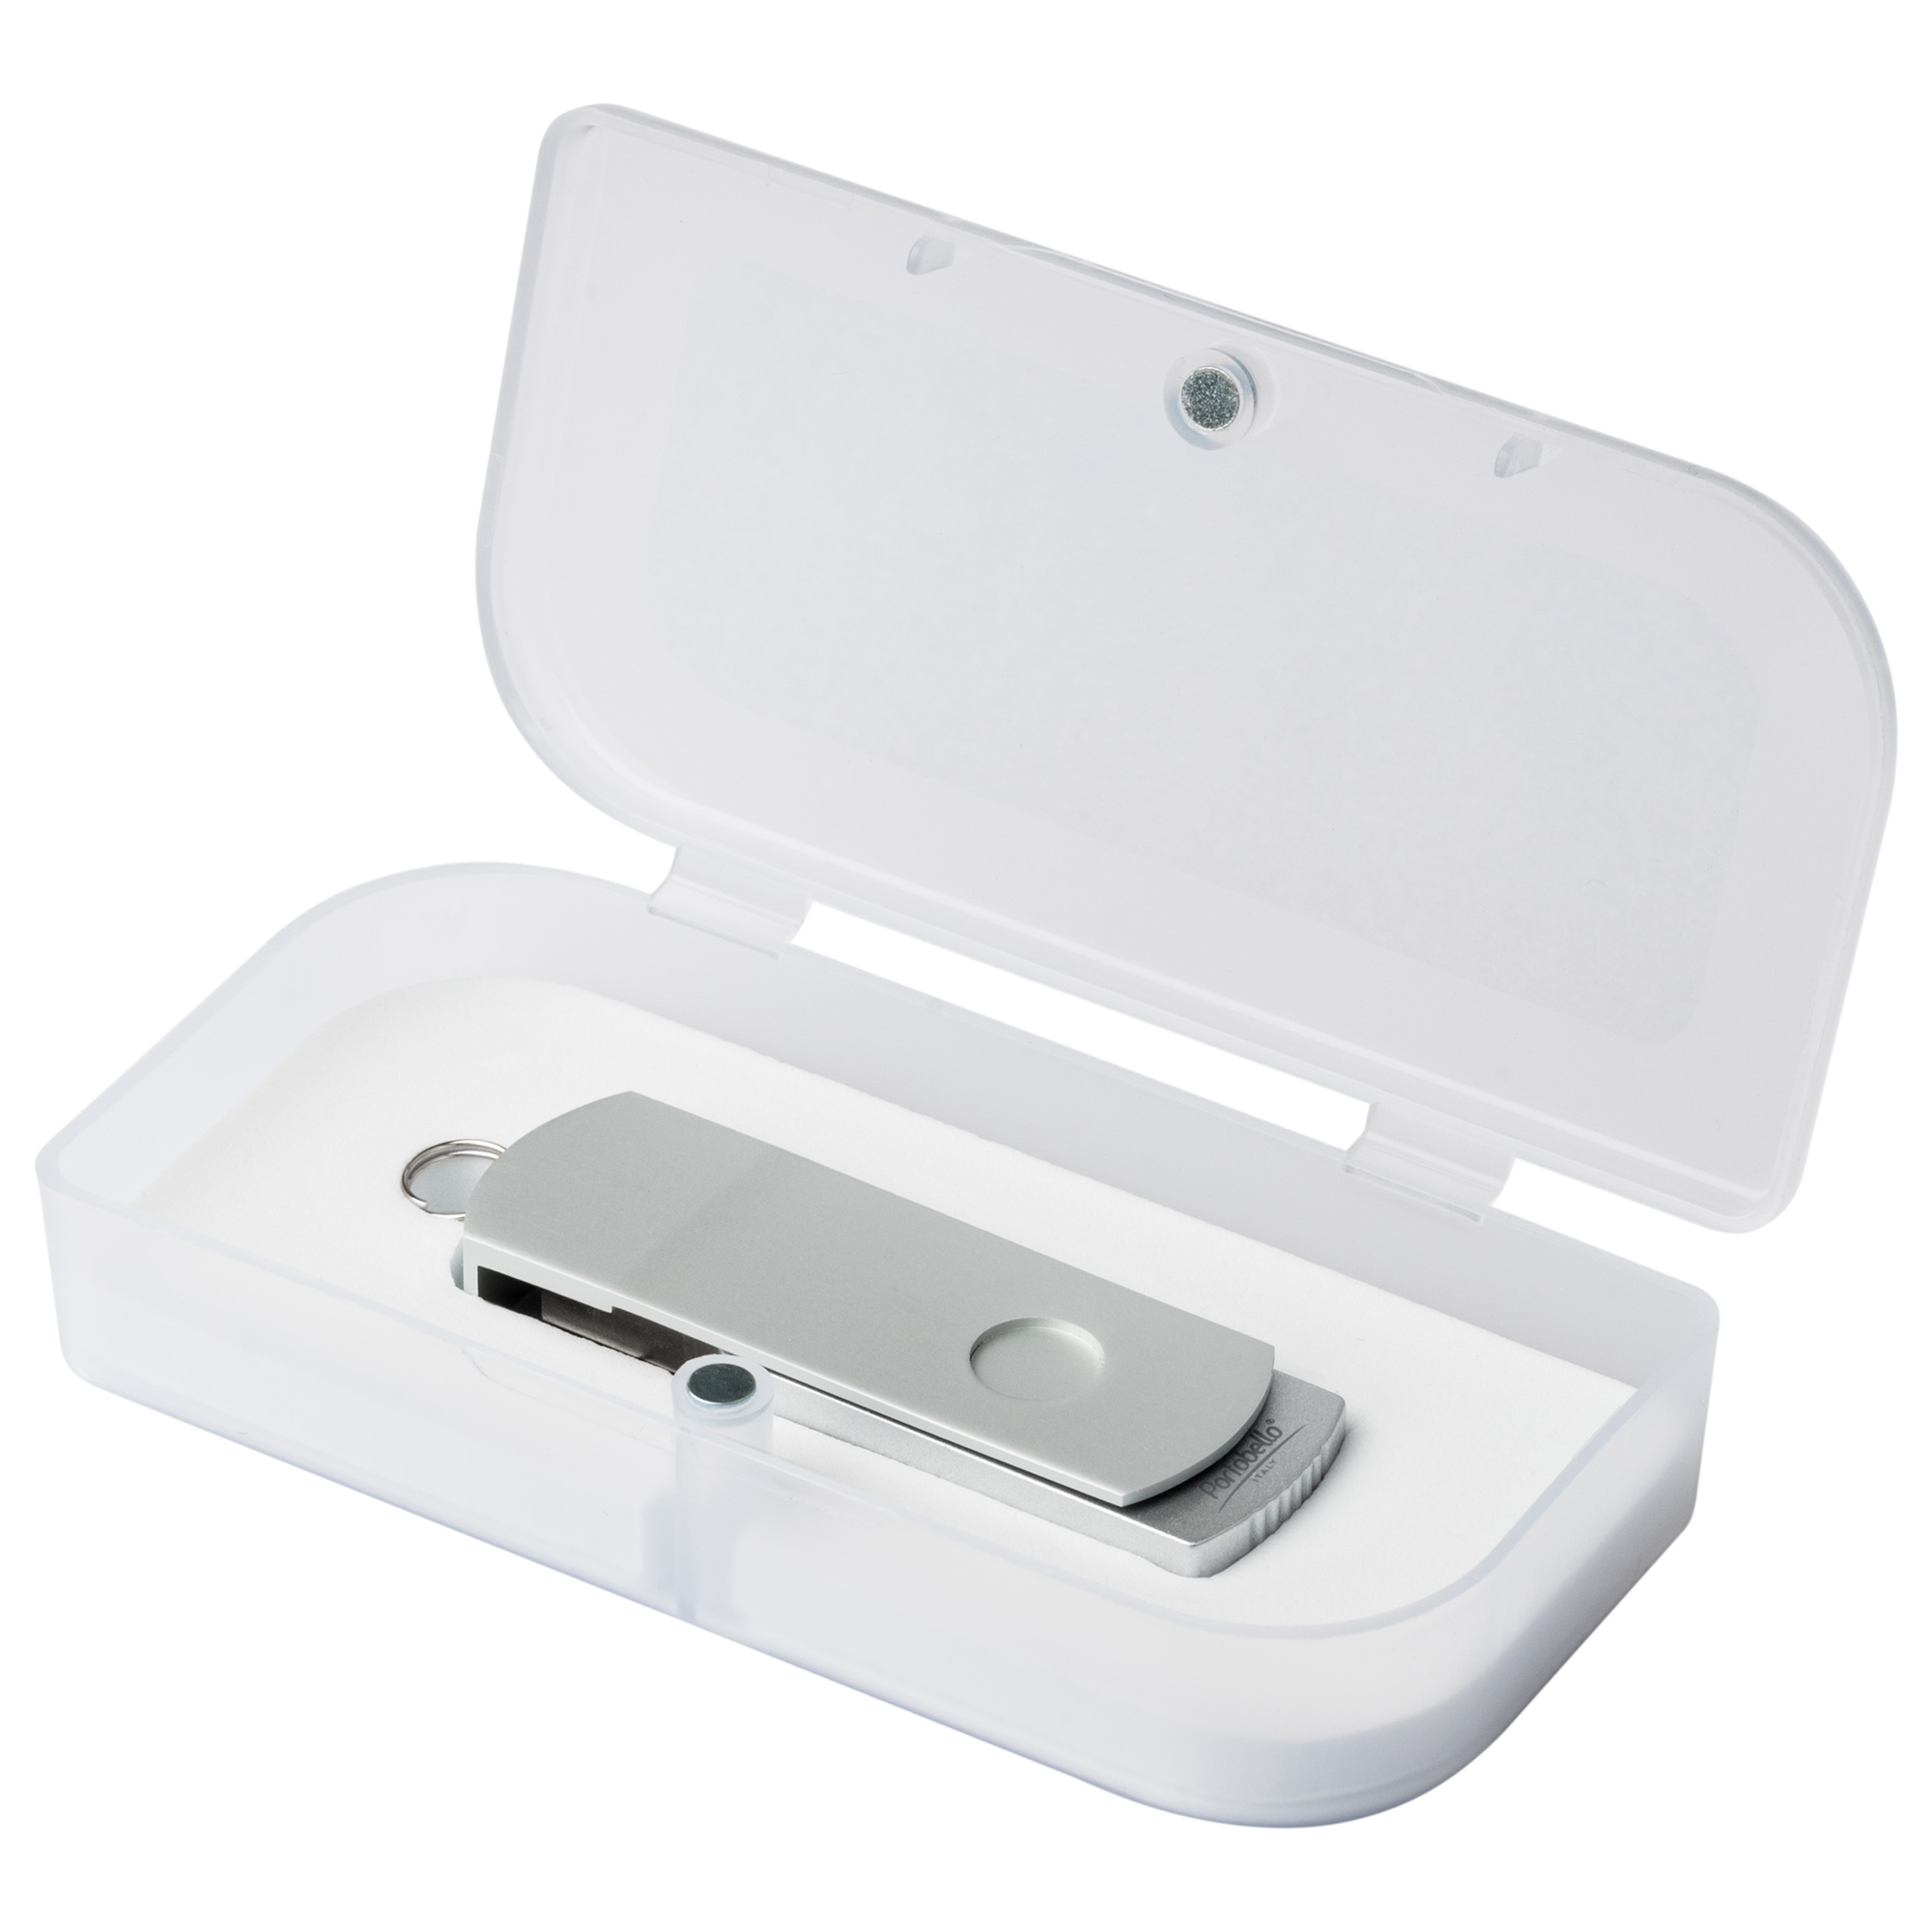 Артикул: A911218.080 — USB Флешка, Elegante, 16 Gb, серебряный, в подарочной упаковке